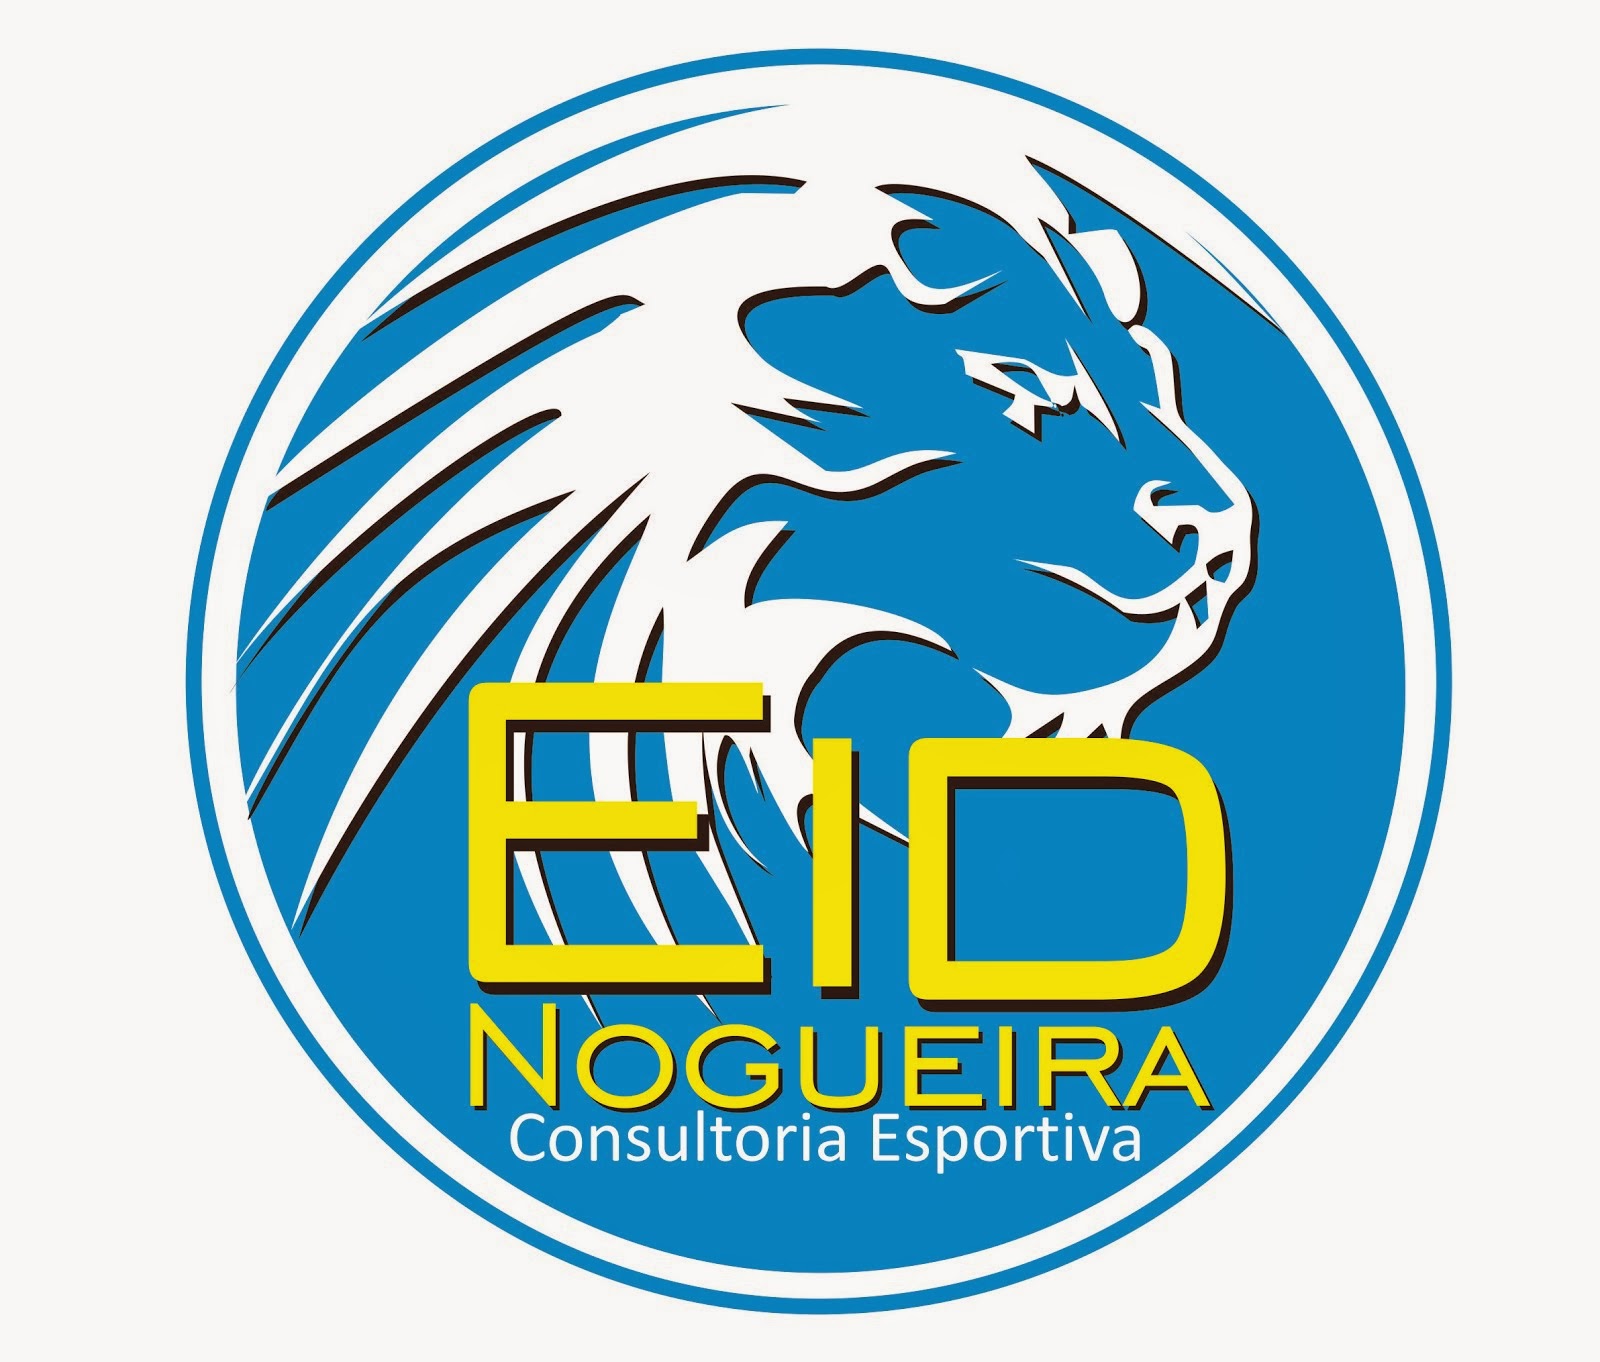 Eid Nogueira Consultoria Esportiva